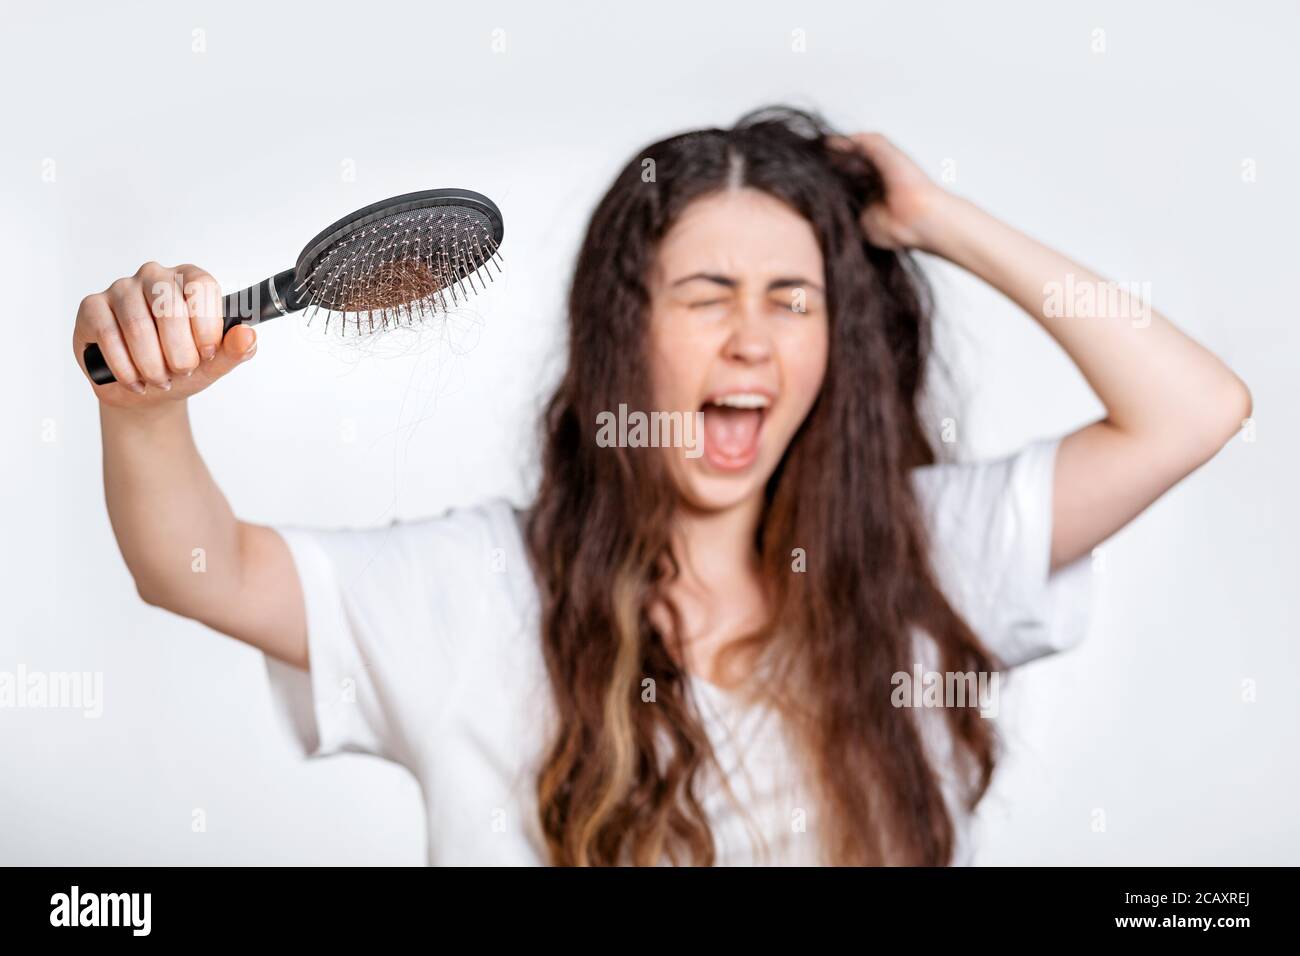 Une femme crie et tient un peigne avec une fart de cheveux tirés. Arrière-plan blanc. Concept de soins et de perte de cheveux. Banque D'Images